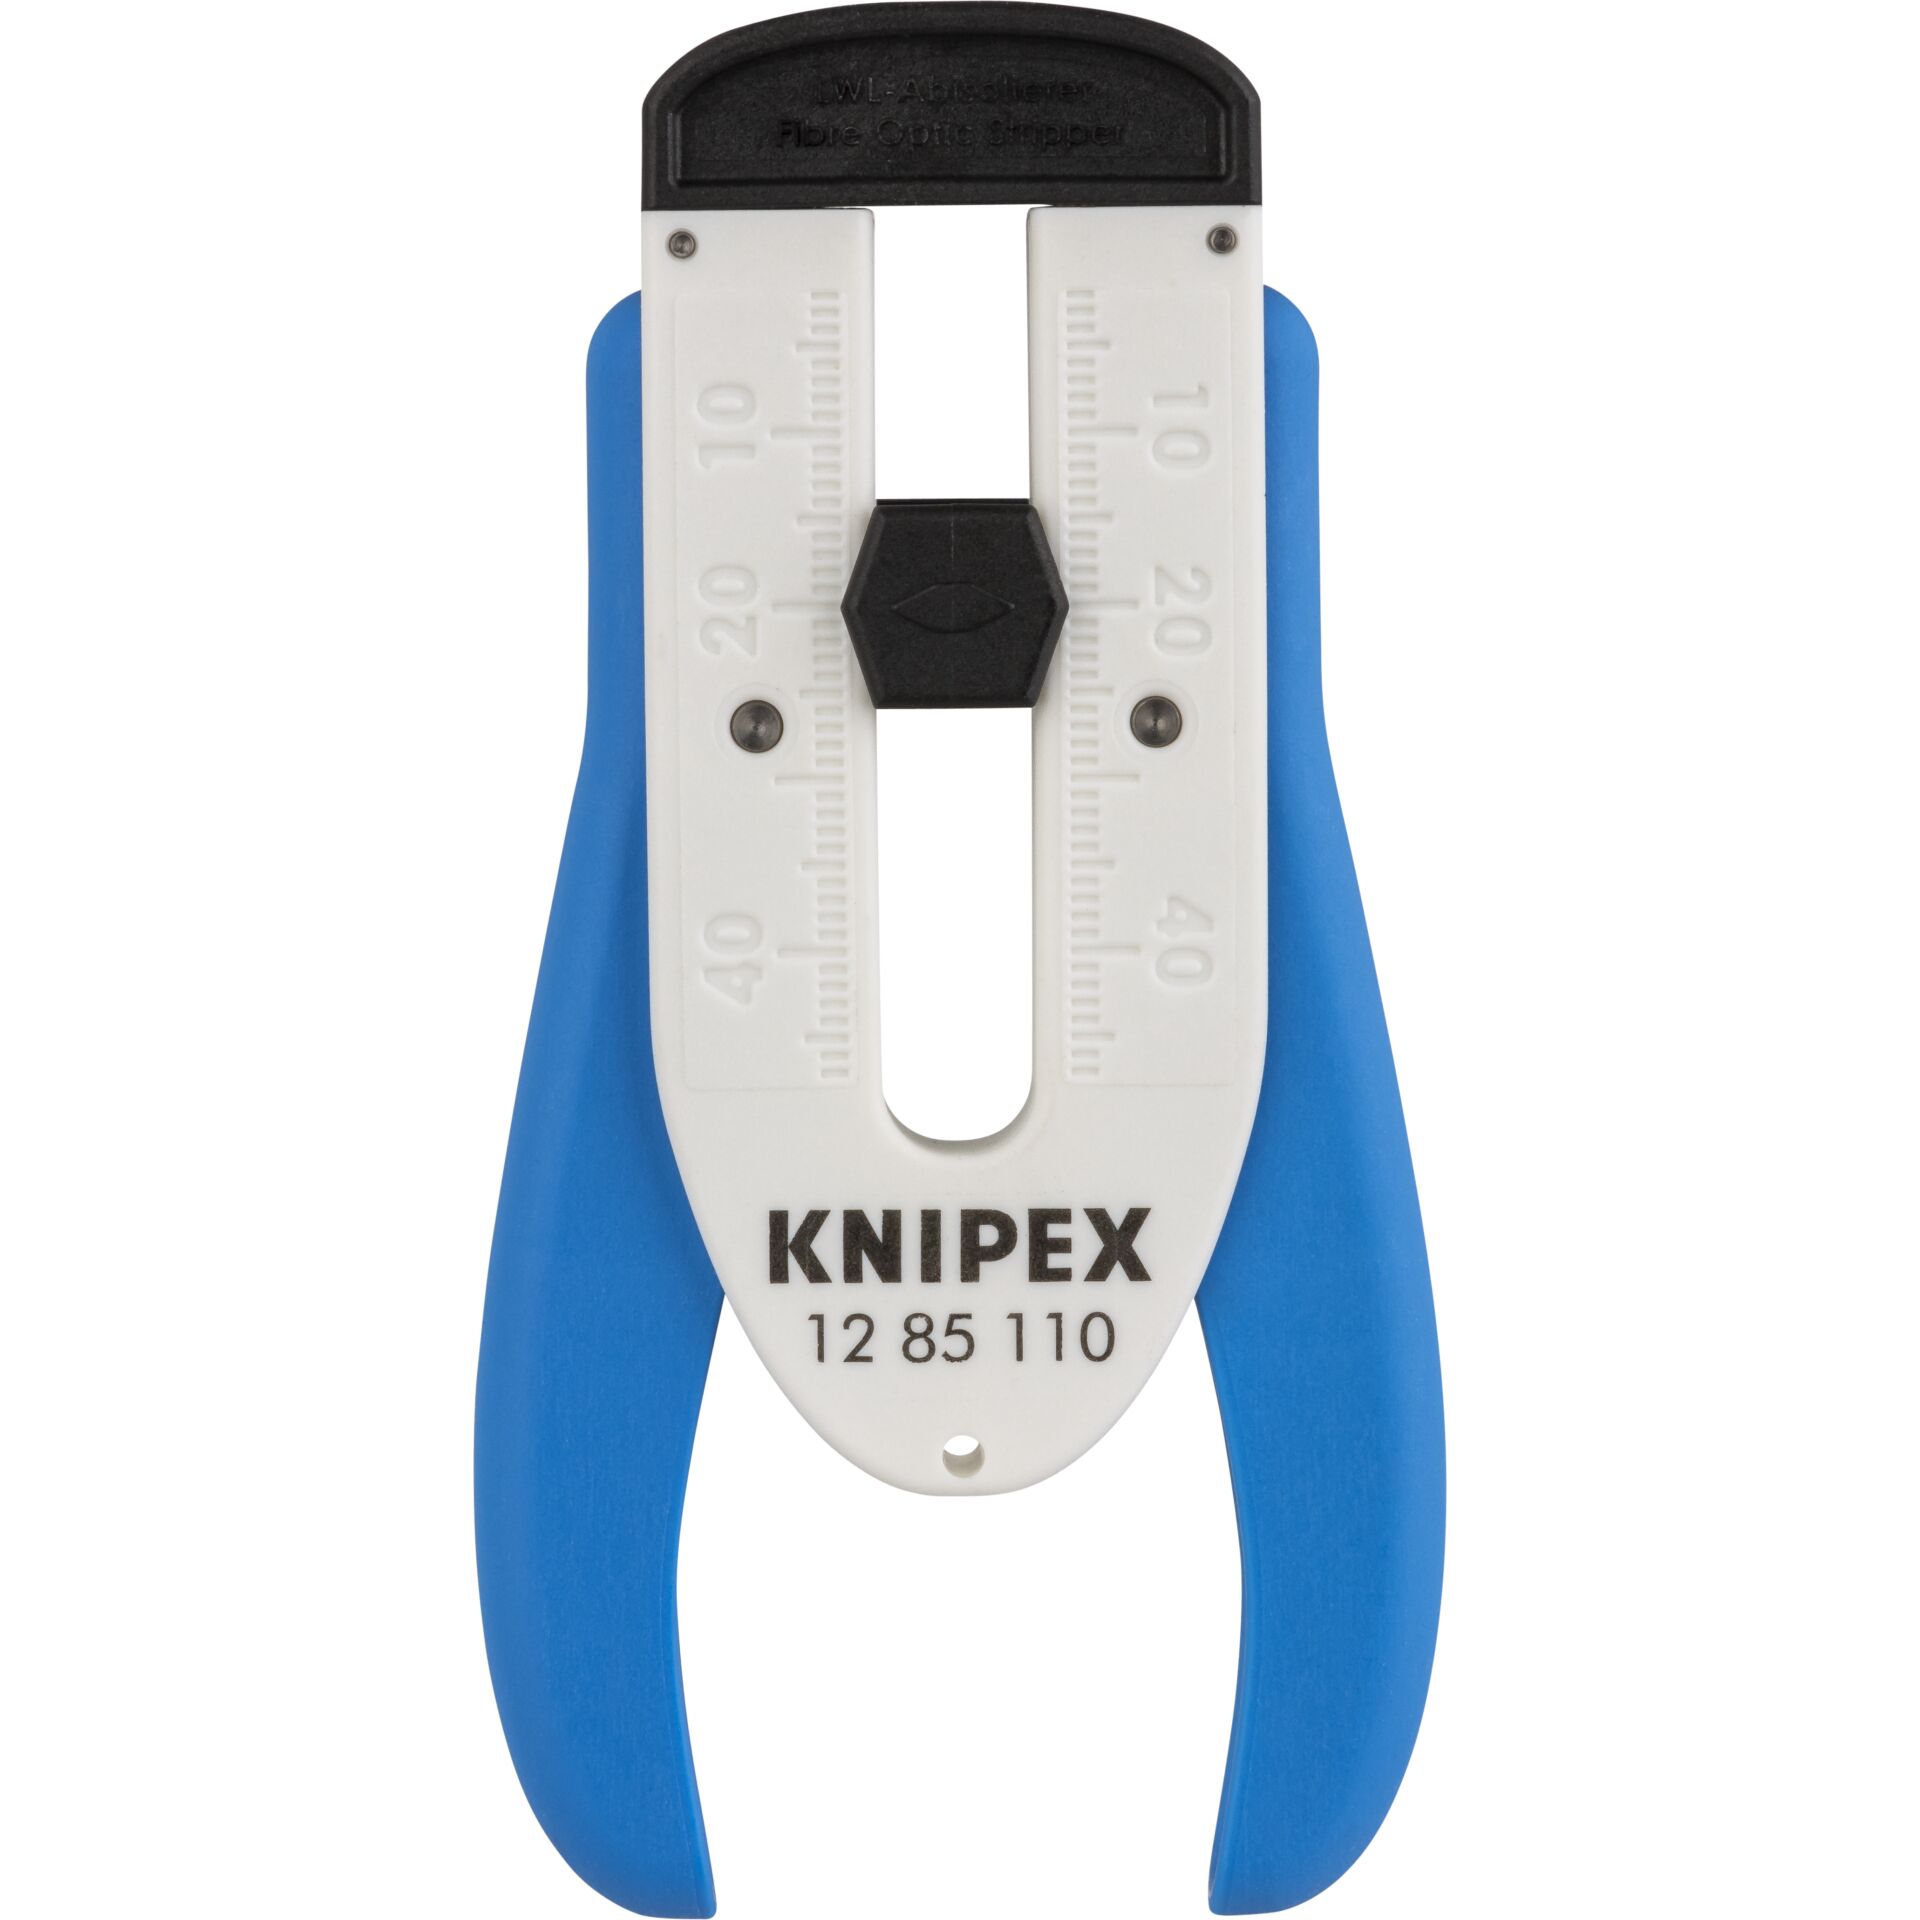 KNIPEX Abisolierwerkzeug für Glasfaserkabel